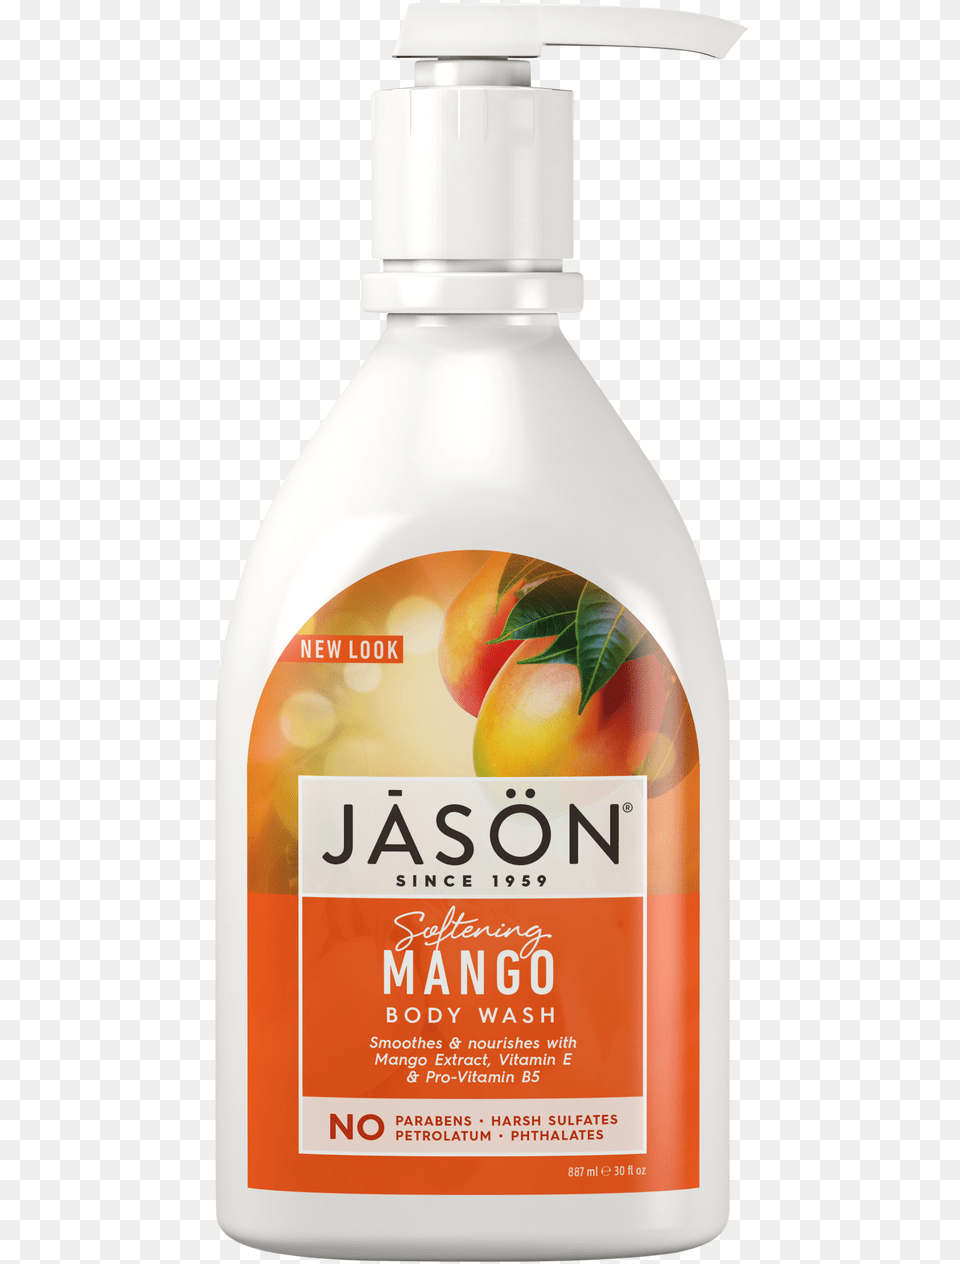 Jason Softening Mango Amp Papaya Pure Natural Body Wash Jason Body Wash, Bottle, Lotion, Food, Fruit Png Image